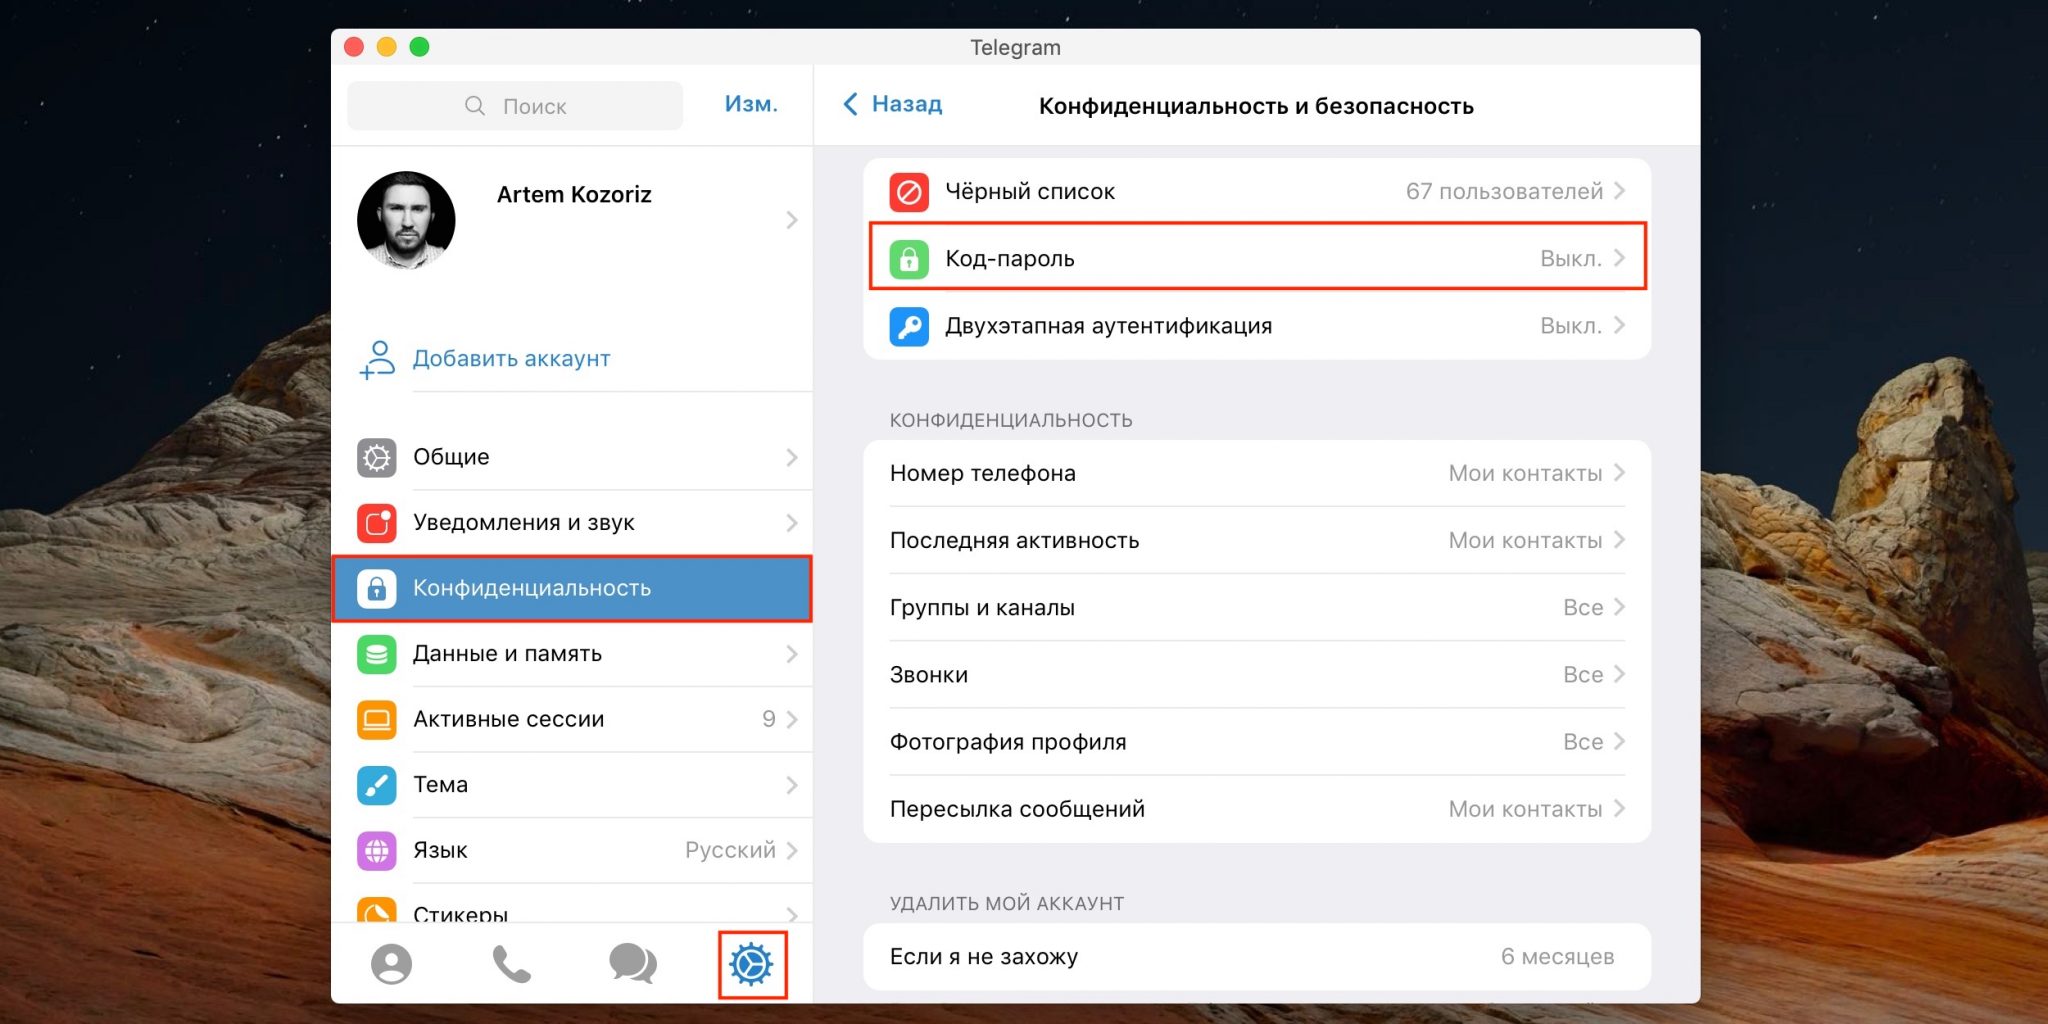 Как установить телеграмм на телефон пошагово русском языке бесплатно фото 107